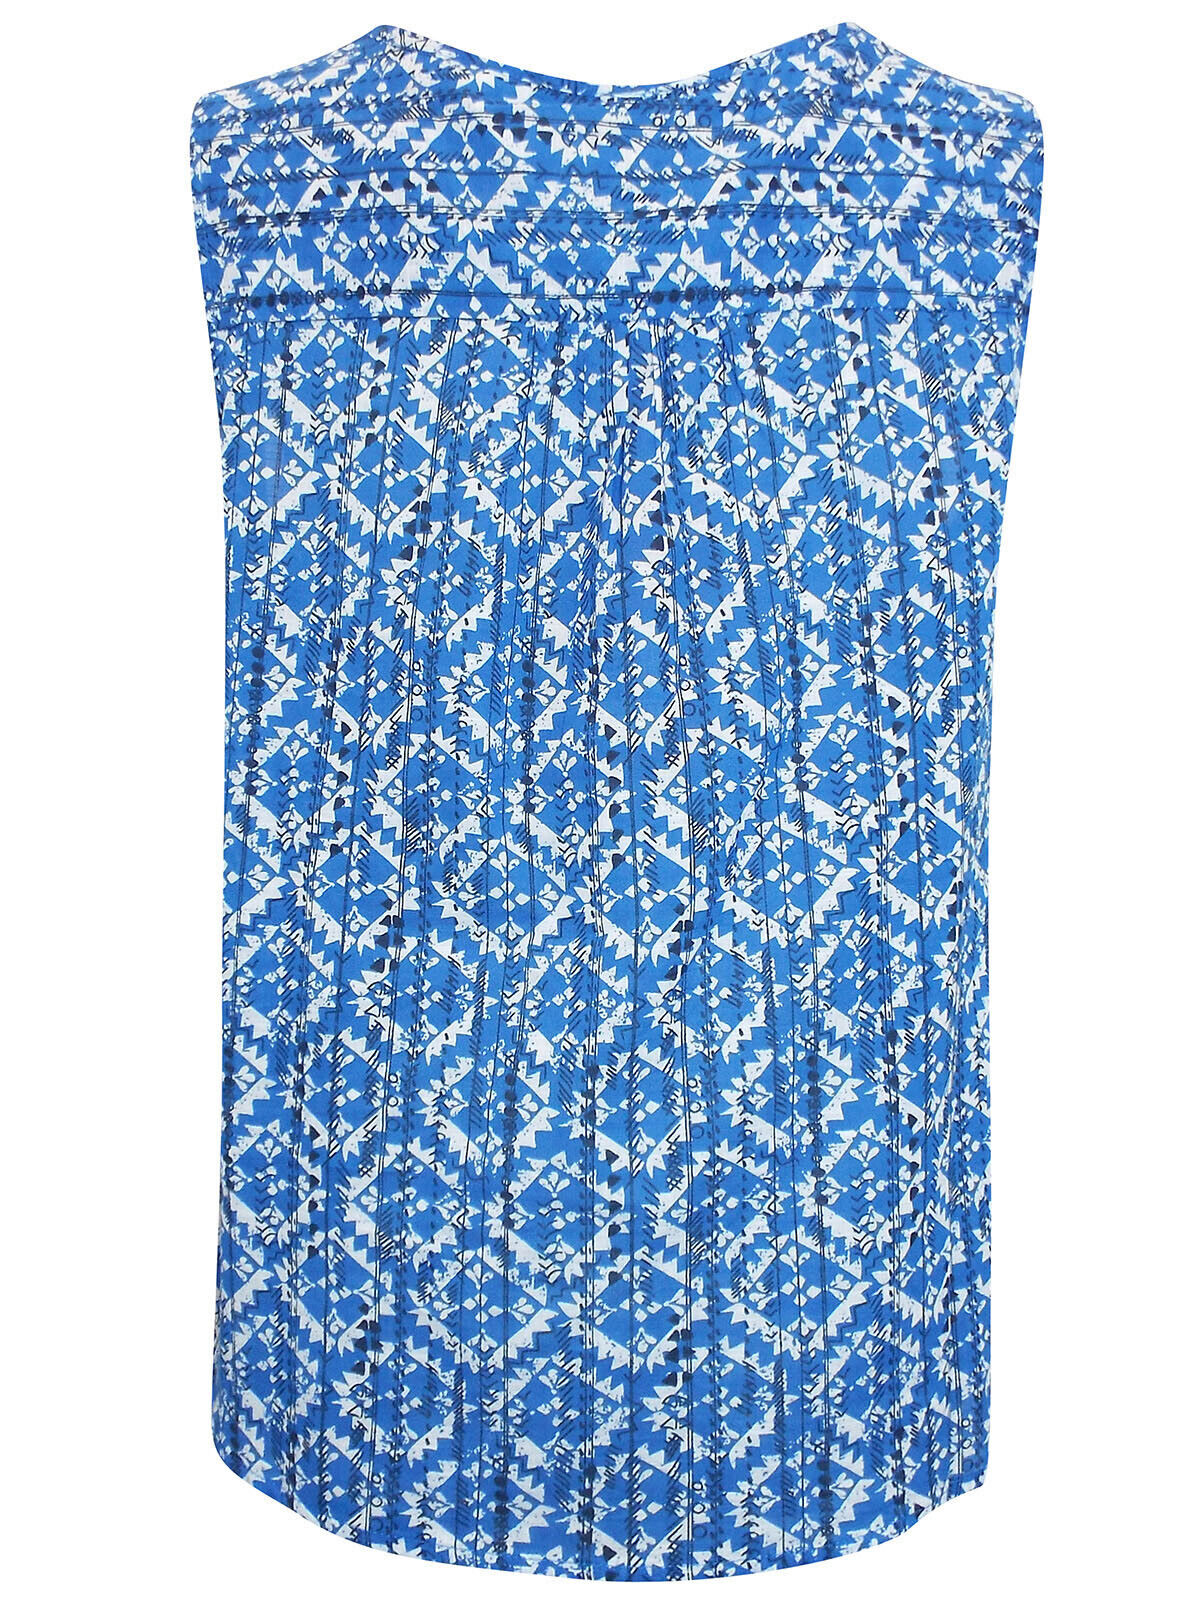 EX Mantaray Debenhams Blue Tile Print Cotton Top in Sizes 8, 12, 14 RRP £25